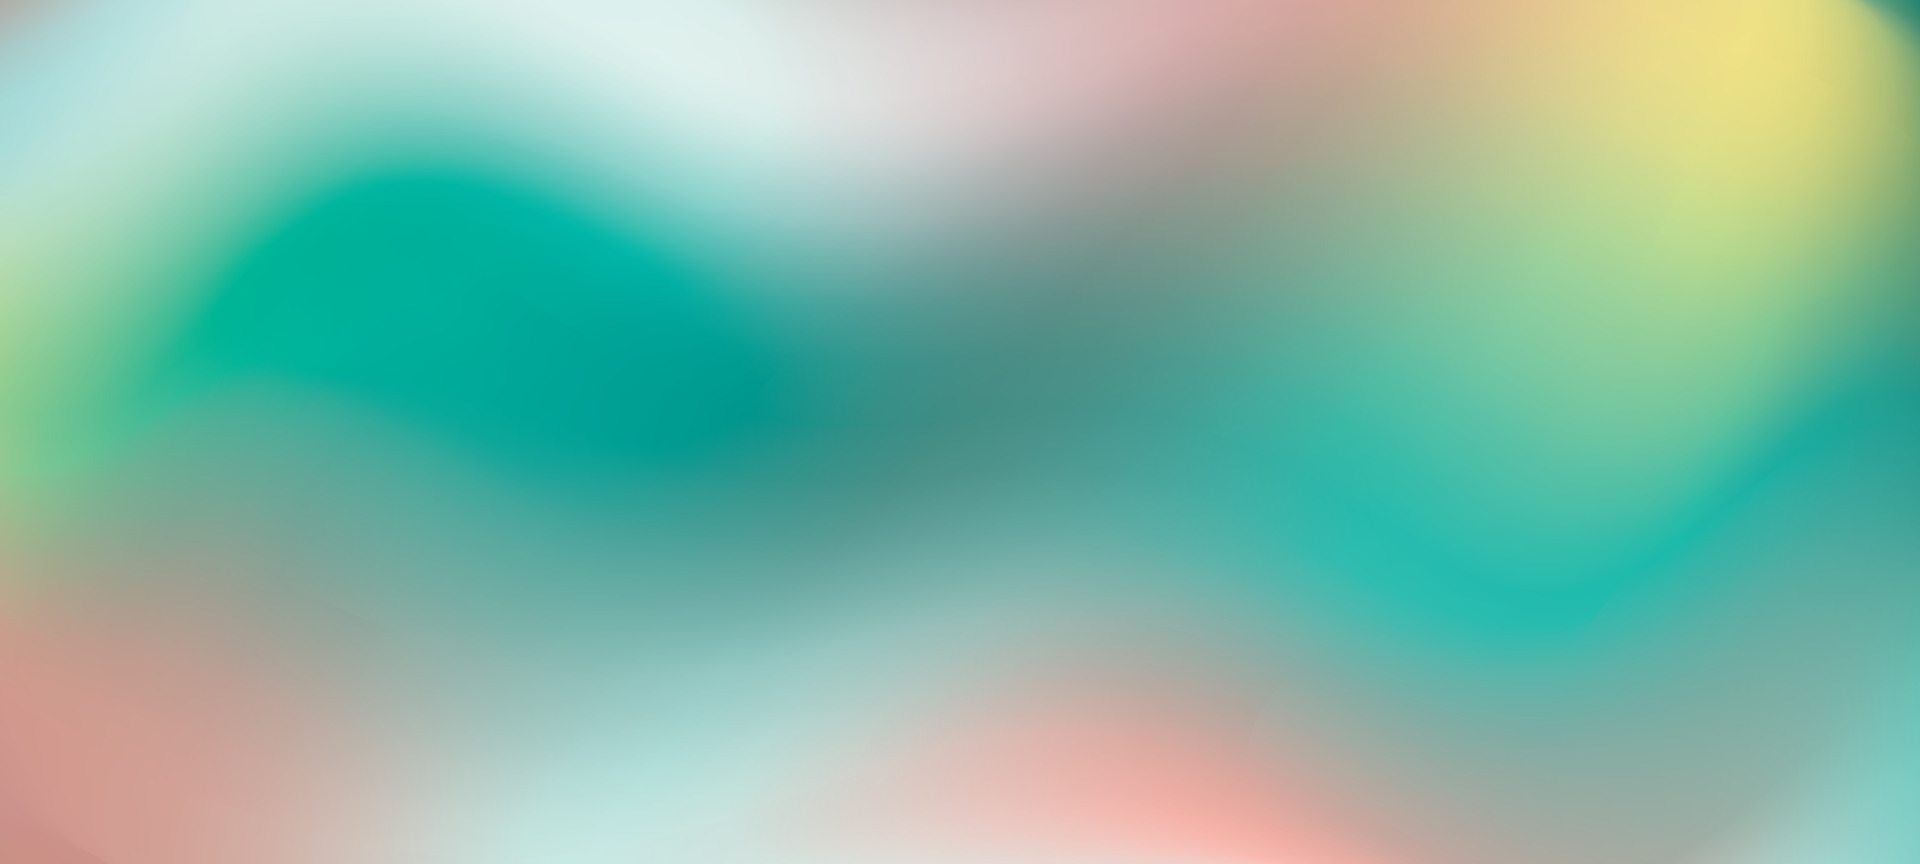 Blur Shape Vector là một mẫu hình ảnh đặc biệt, được thiết kế để tạo ra sự mờ đẹp mắt cho các hình ảnh của bạn. Hãy thưởng thức những hình ảnh Blur Shape Vector của chúng tôi để cảm nhận sự kết hợp hoàn hảo giữa màu sắc và hình dáng!